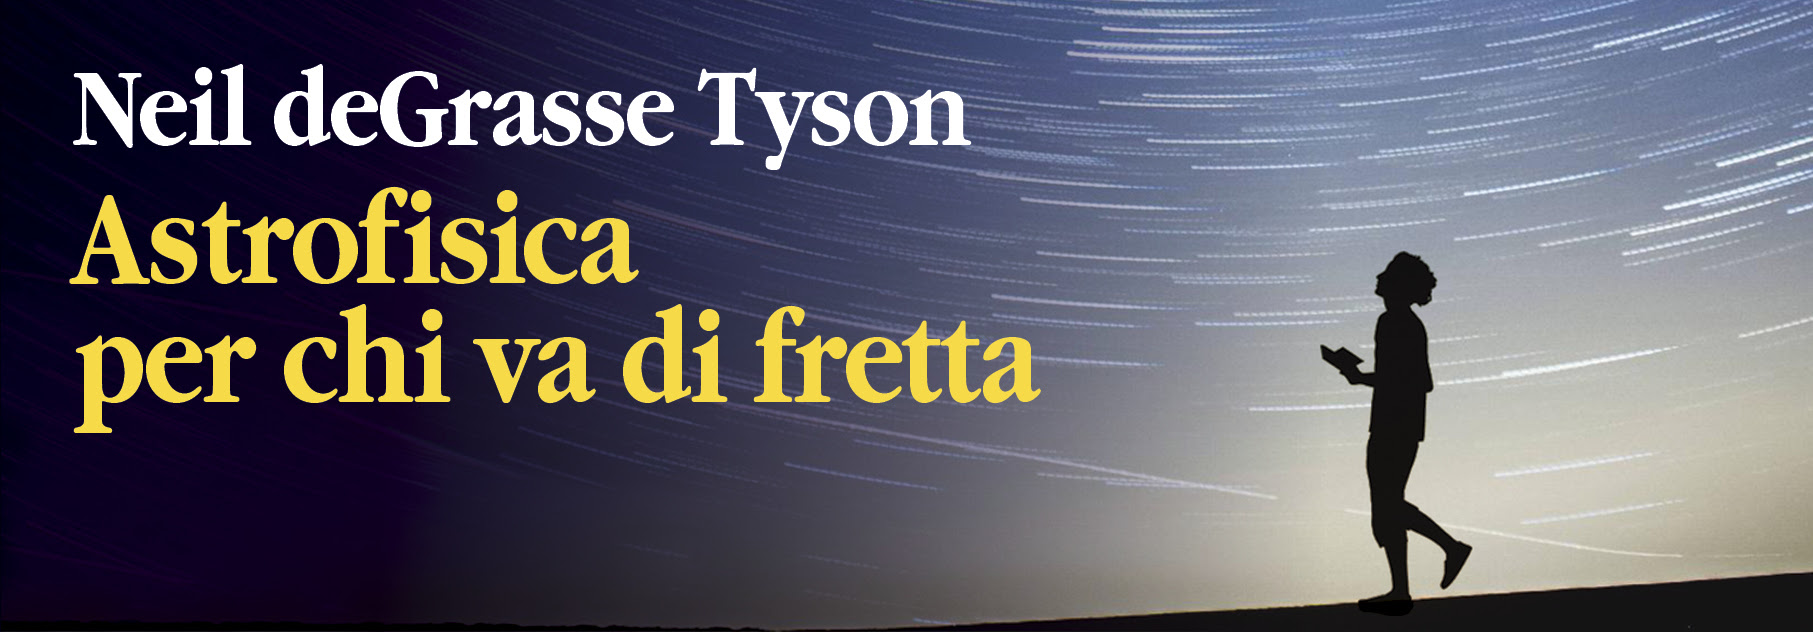 Neil deGrasse Tyson - Astrofisica per chi va di fretta